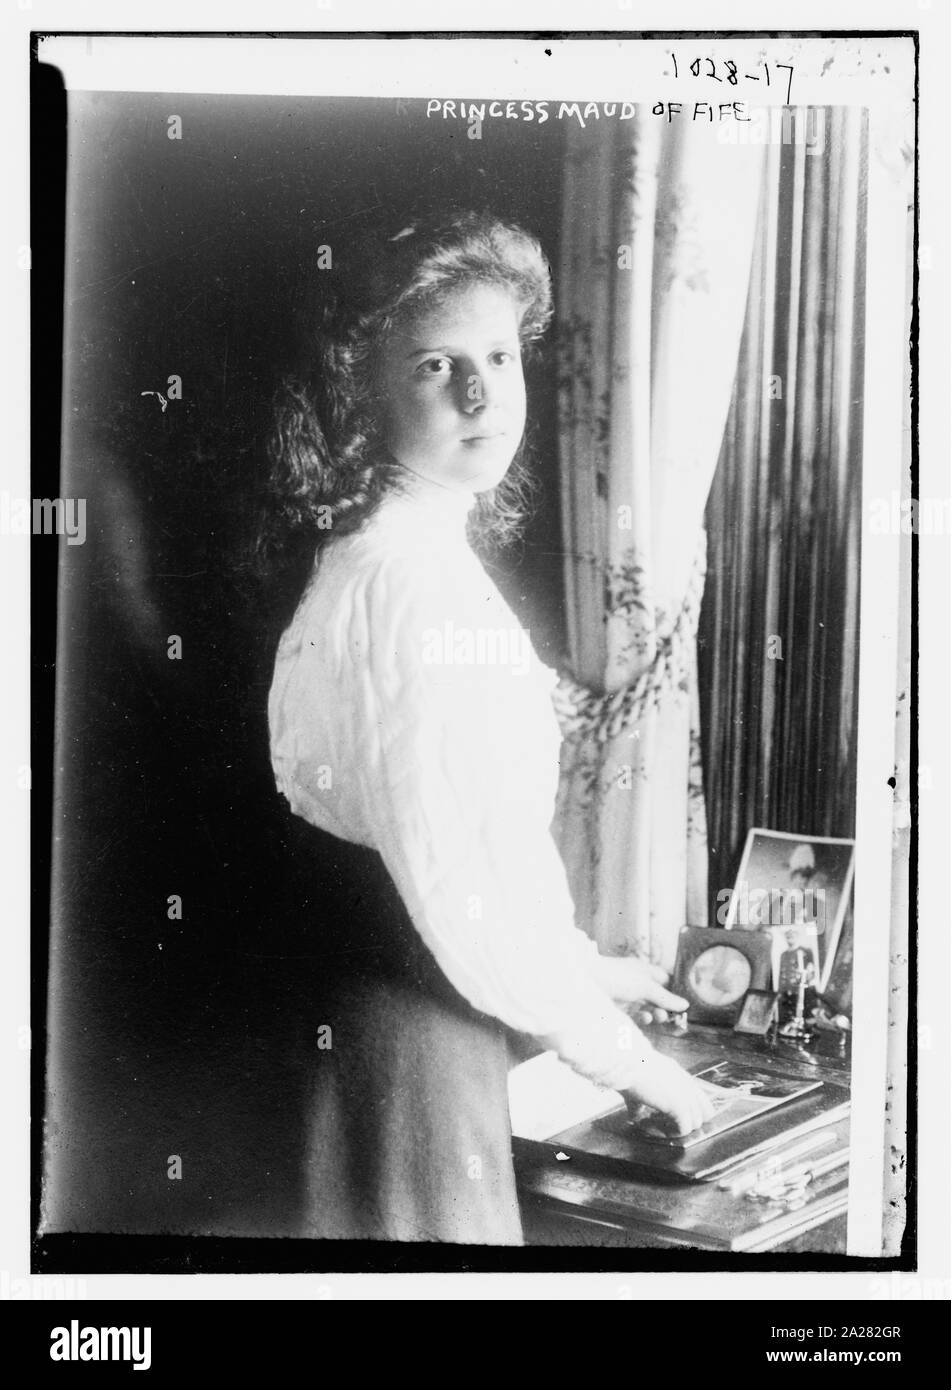 La princesa Maud de Fife, de pie en la mesa sobre la que hay fotos Foto de stock